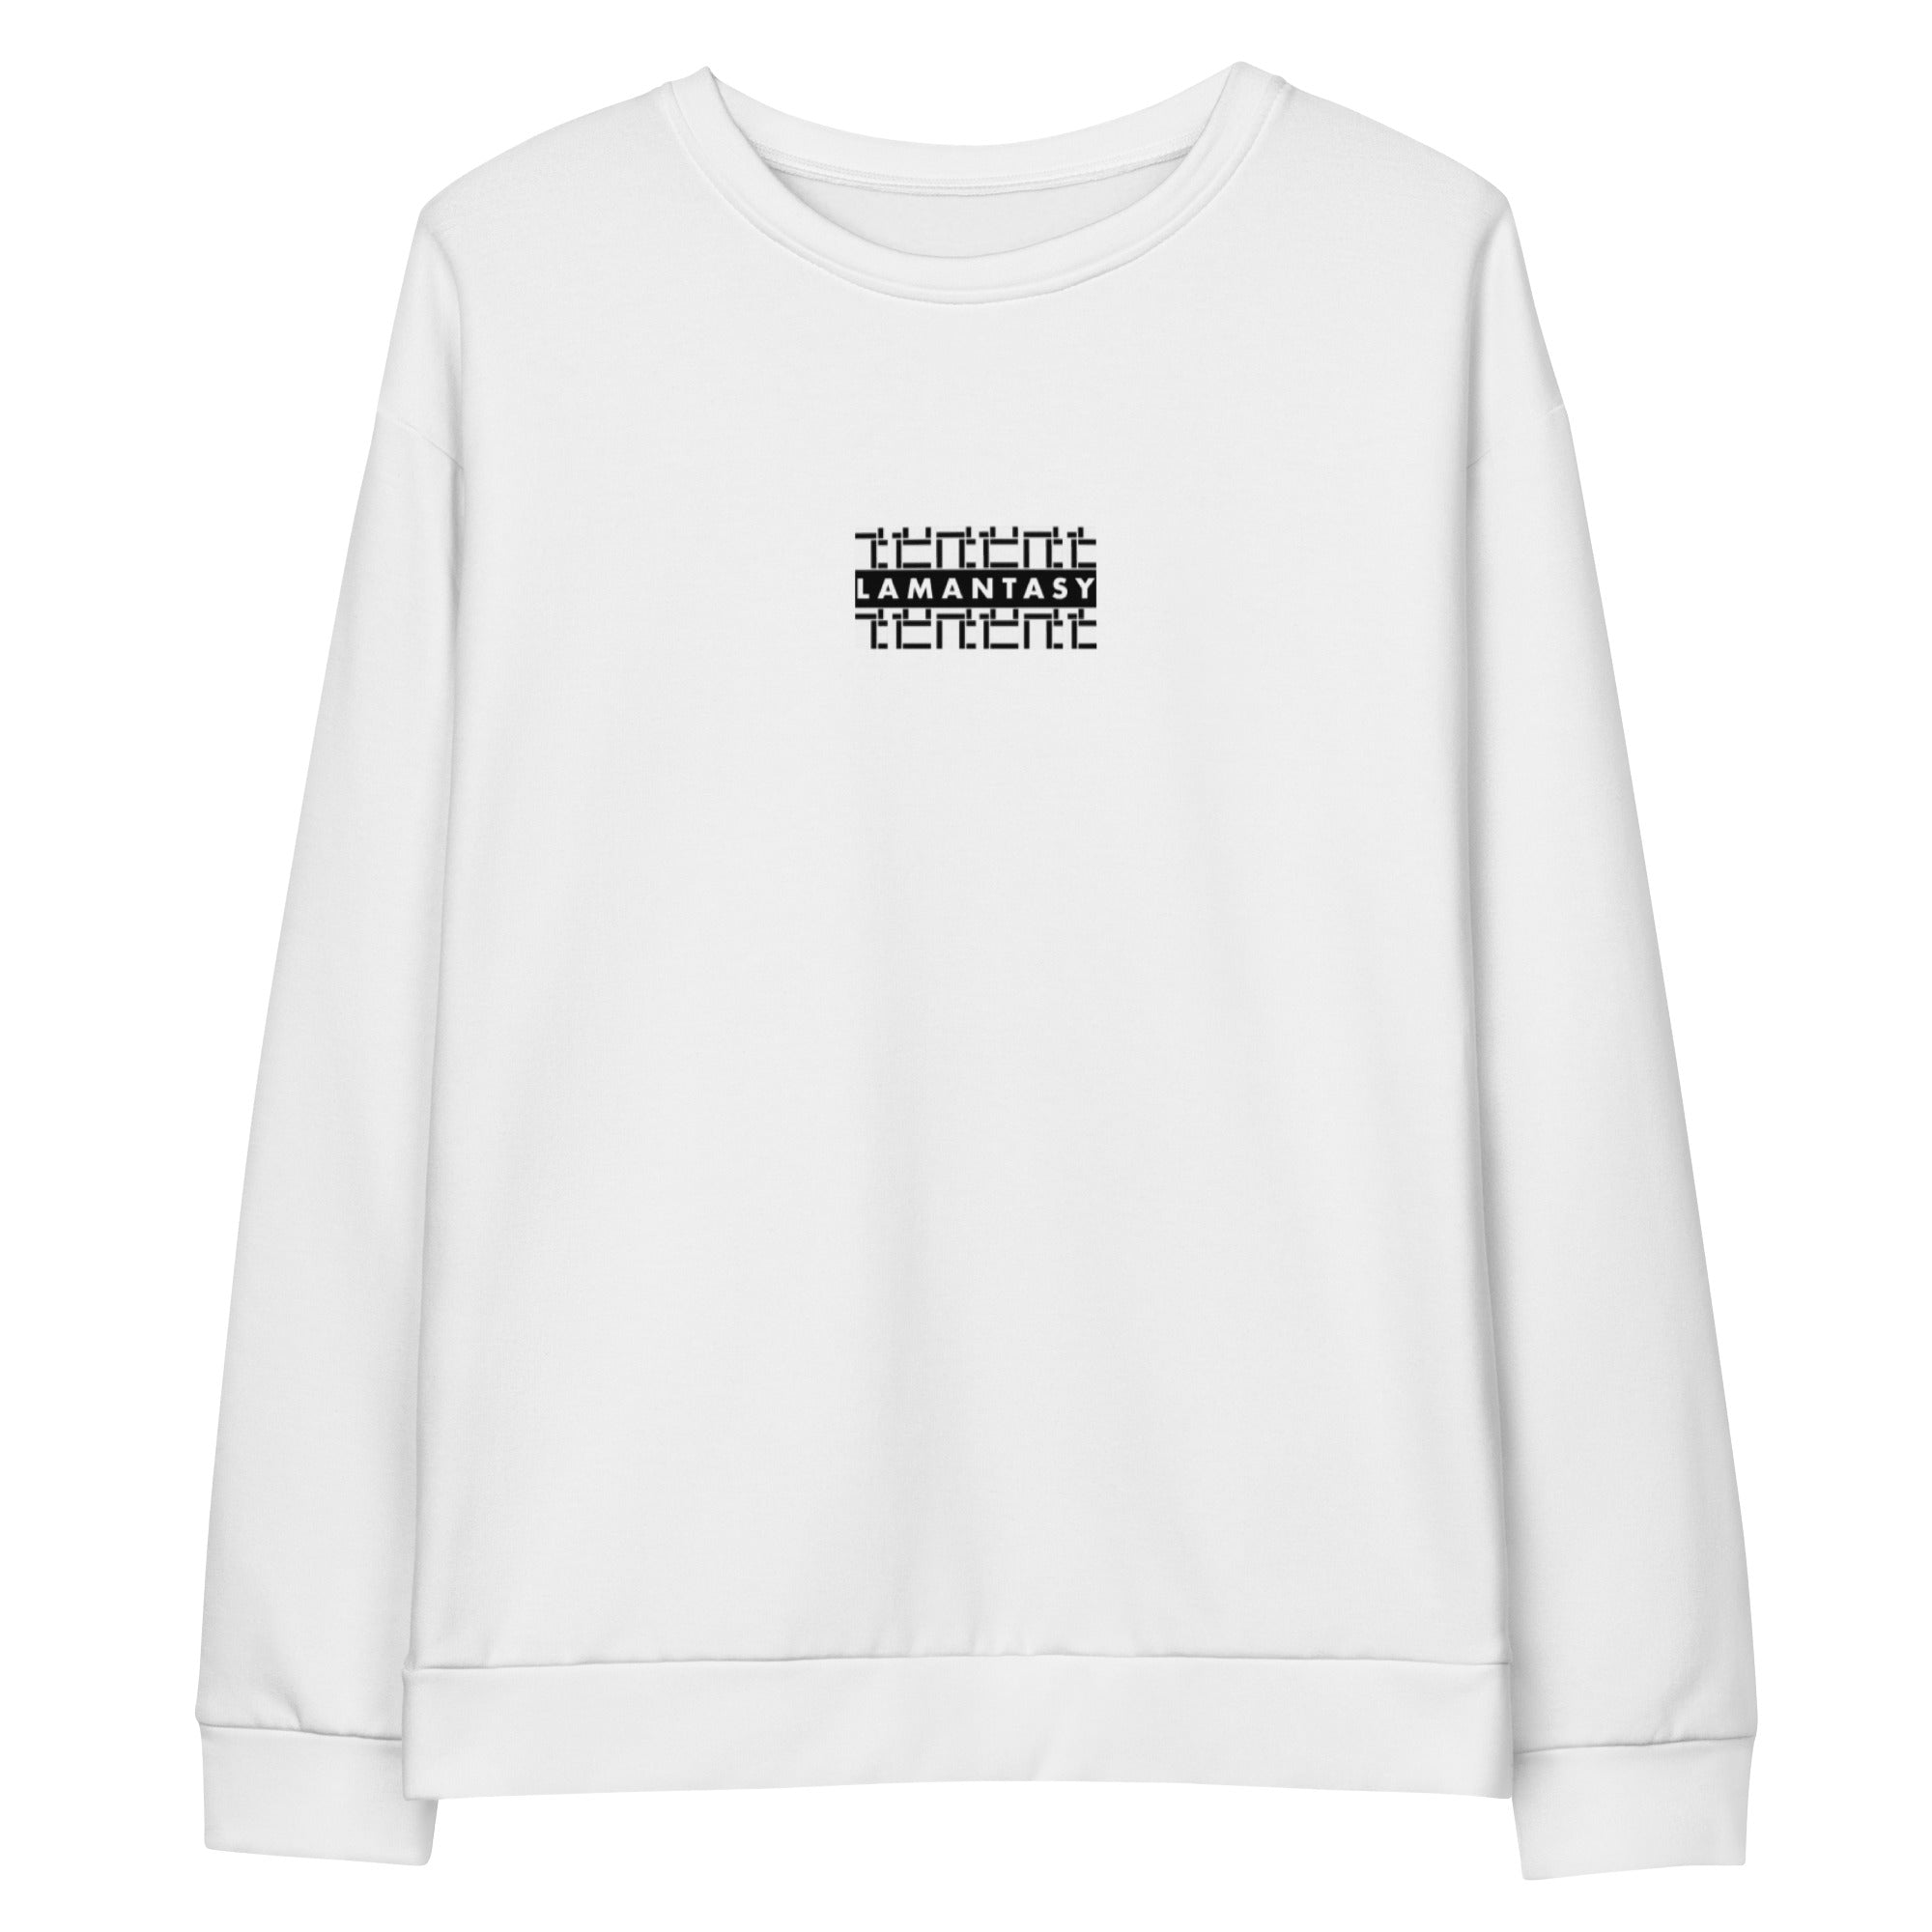 LAMANTASY White Sweatshirt